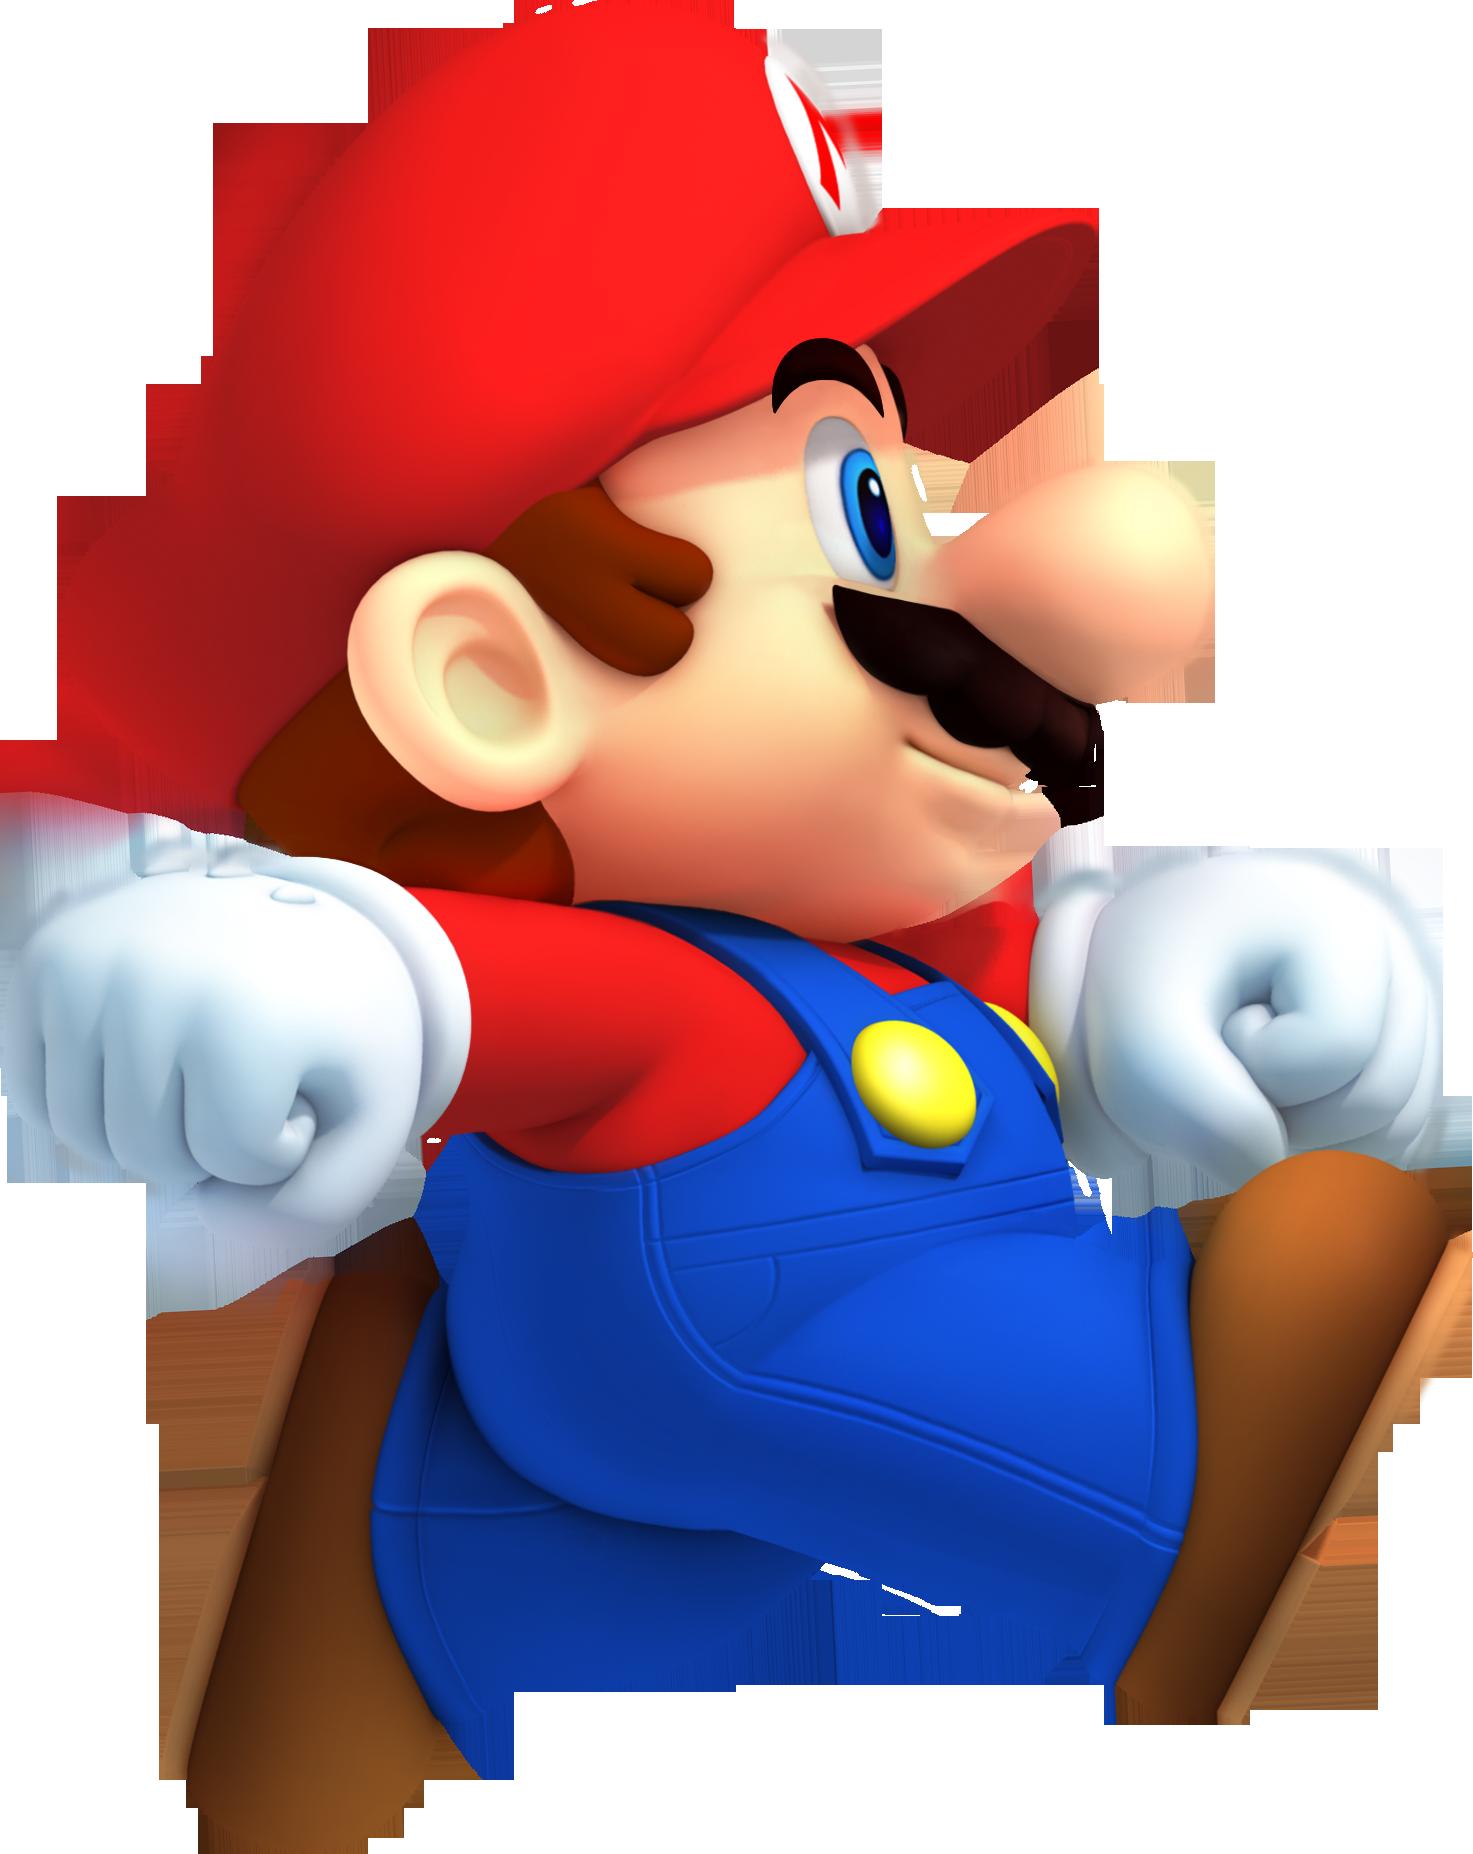 Mario là một nhân vật huyền thoại được yêu thích trong game thế giới mở. Hình ảnh Mario trong suốt này sẽ khiến bạn dễ dàng nhận ra anh ta và rơi vào tình trạng say mê. Với thiết kế đầy sáng tạo, đây là một tác phẩm nghệ thuật thực sự cần được trải nghiệm.